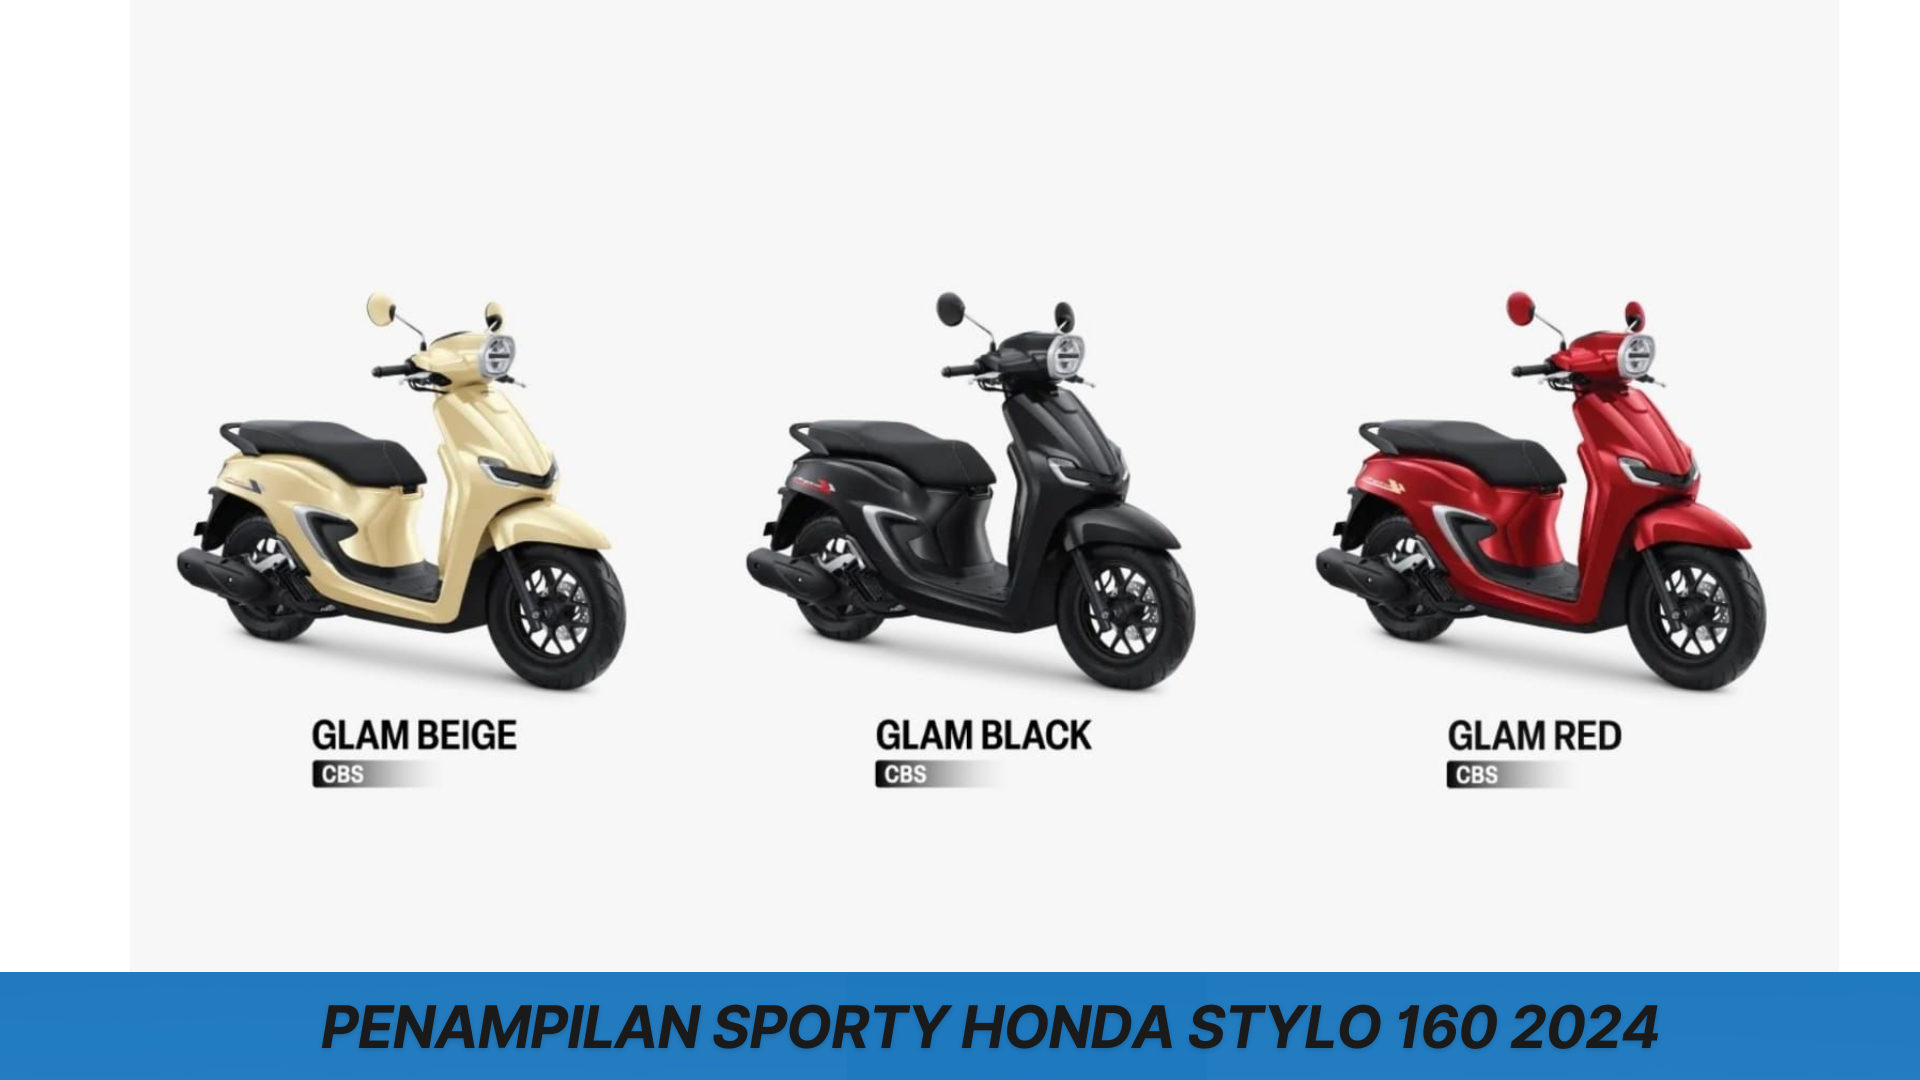 Honda Stylo 160 2024 Punya Performa Unggul dan Desain Menarik Sporty, Mampu Memikat Hati Para Pecintanya